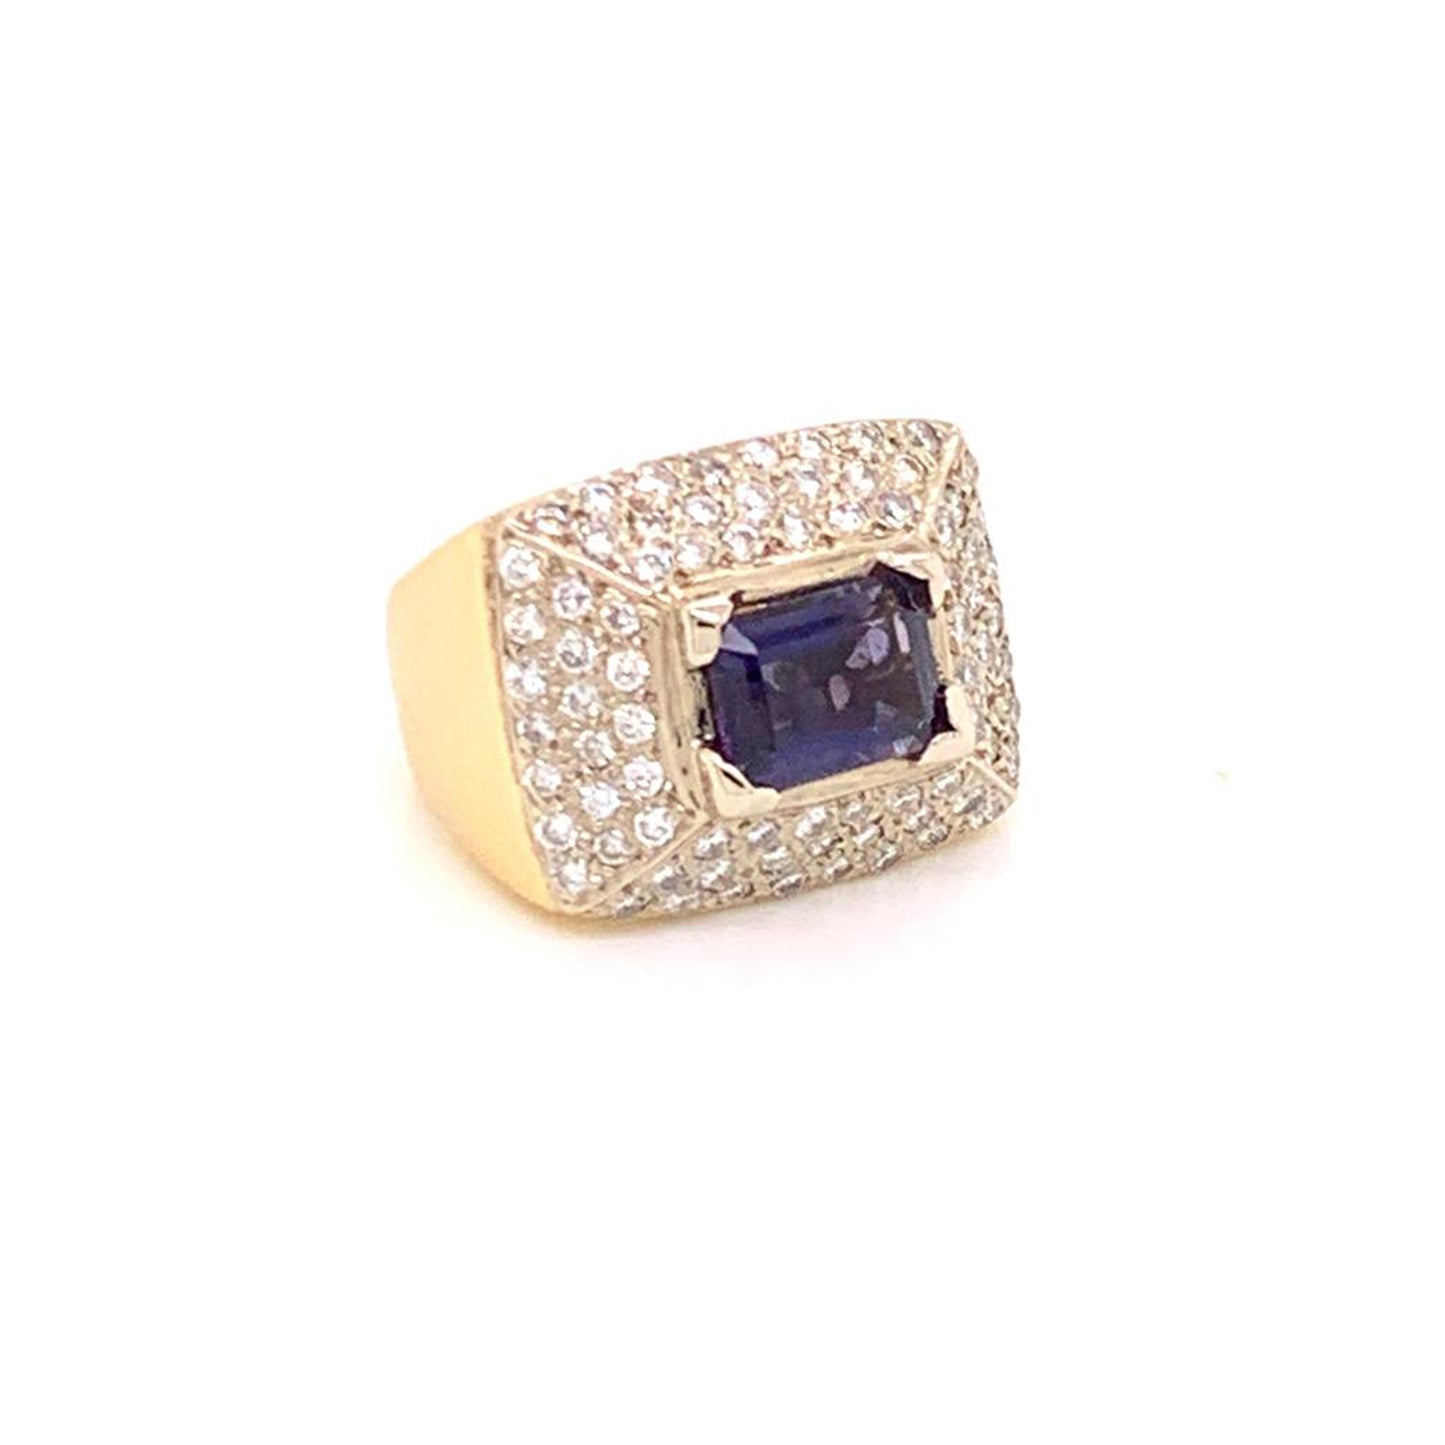 Diamond Amethyst Ring 10k 1.88 TCW Women Certified $2,700 606233 - Certified Fine Jewelry